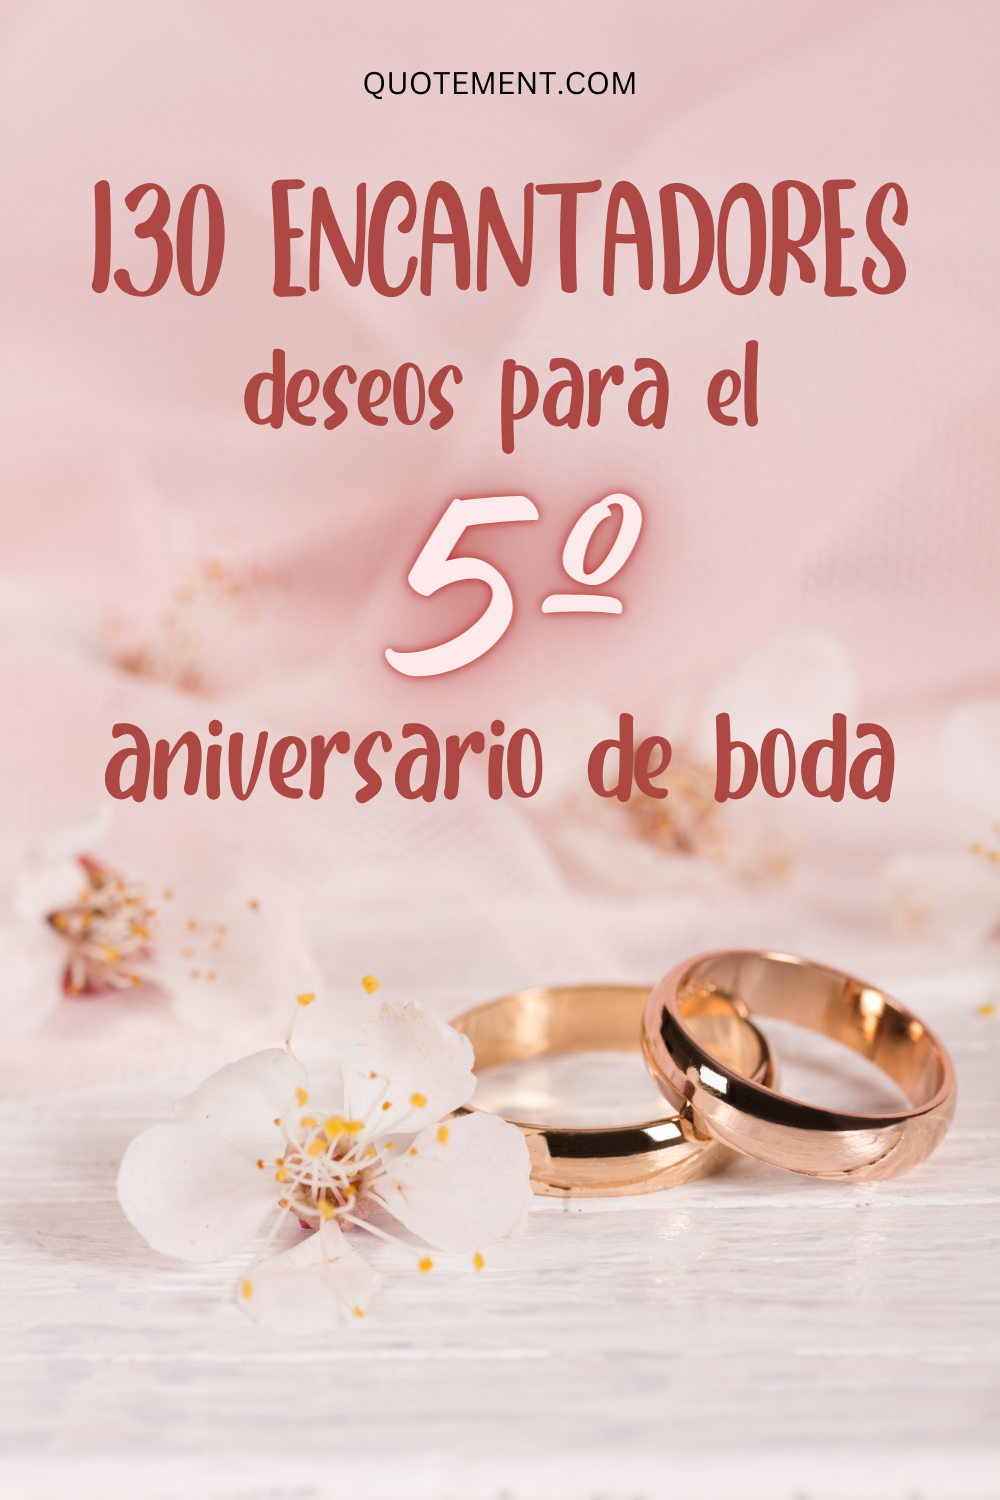 130 grandes deseos y citas para el 5º aniversario de boda